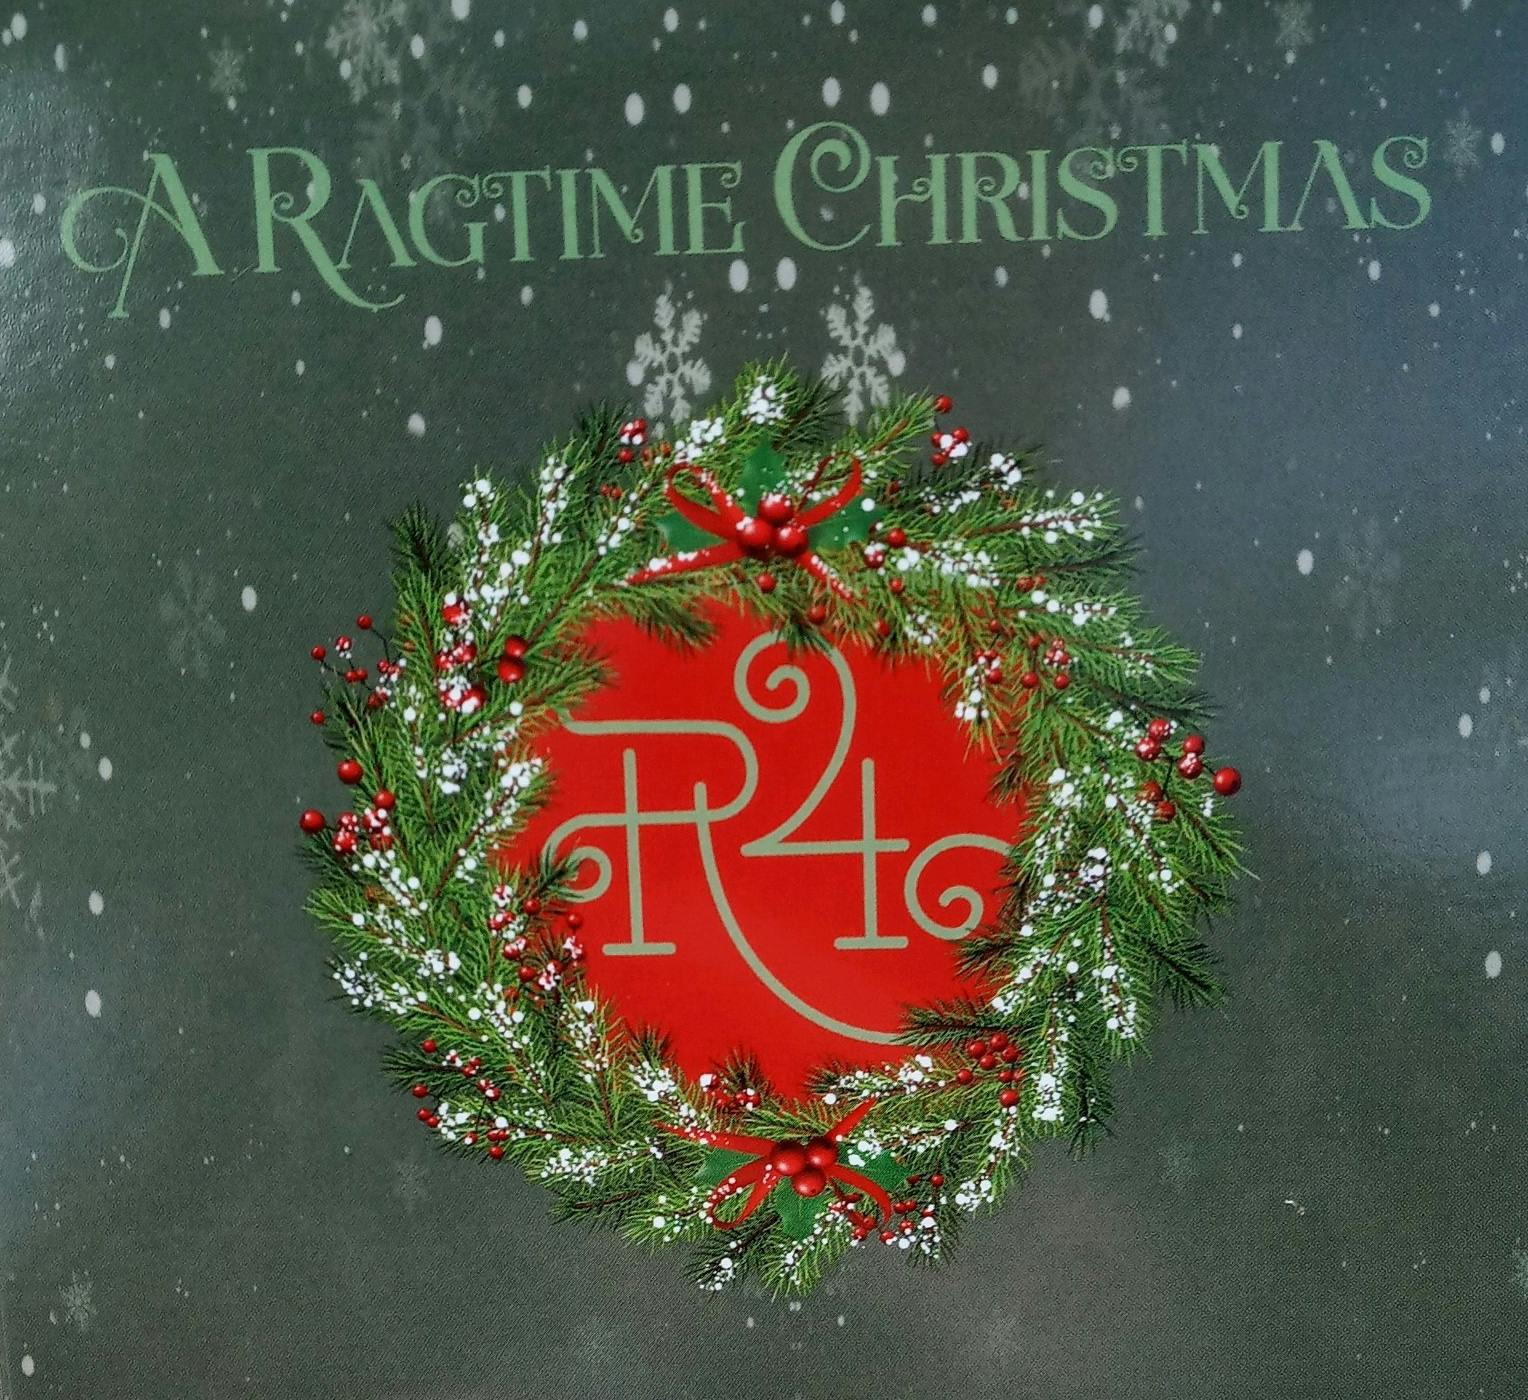 “A Ragtime Christmas” CD